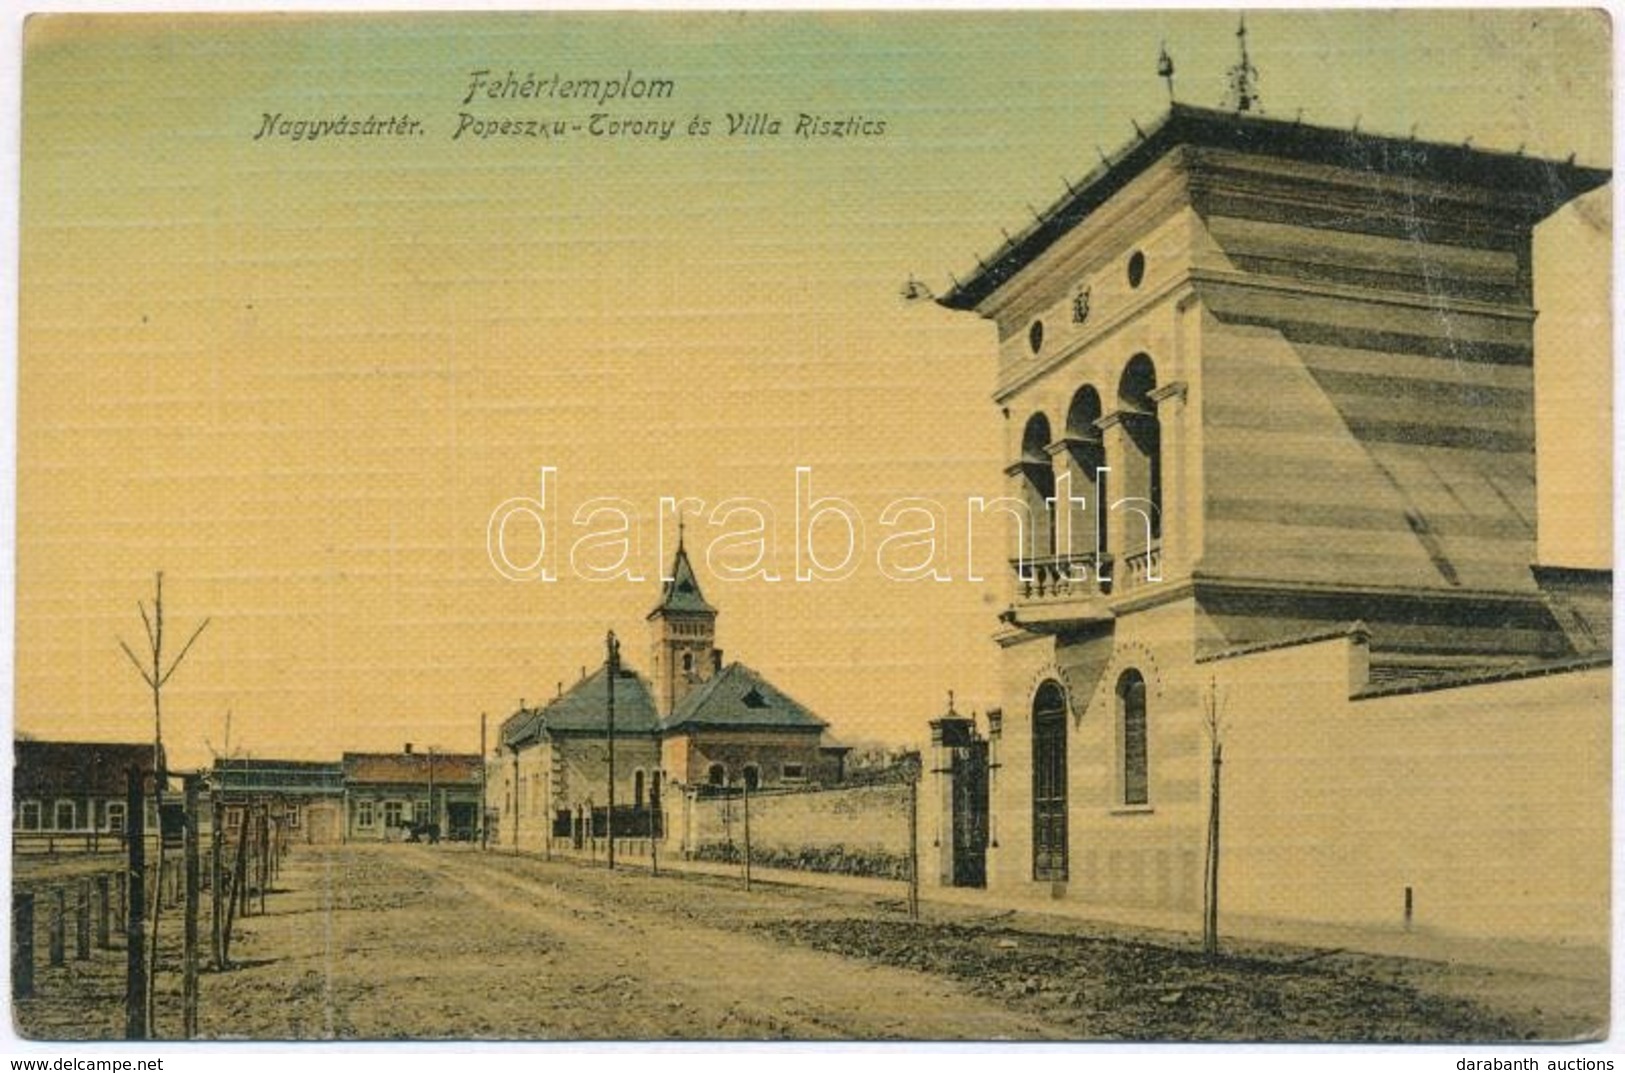 T3 1909 Fehértemplom, Ung. Weisskirchen, Bela Crkva; Nagyvásártér, Popeszku Torony és Villa Risztics / Market Square, To - Non Classificati